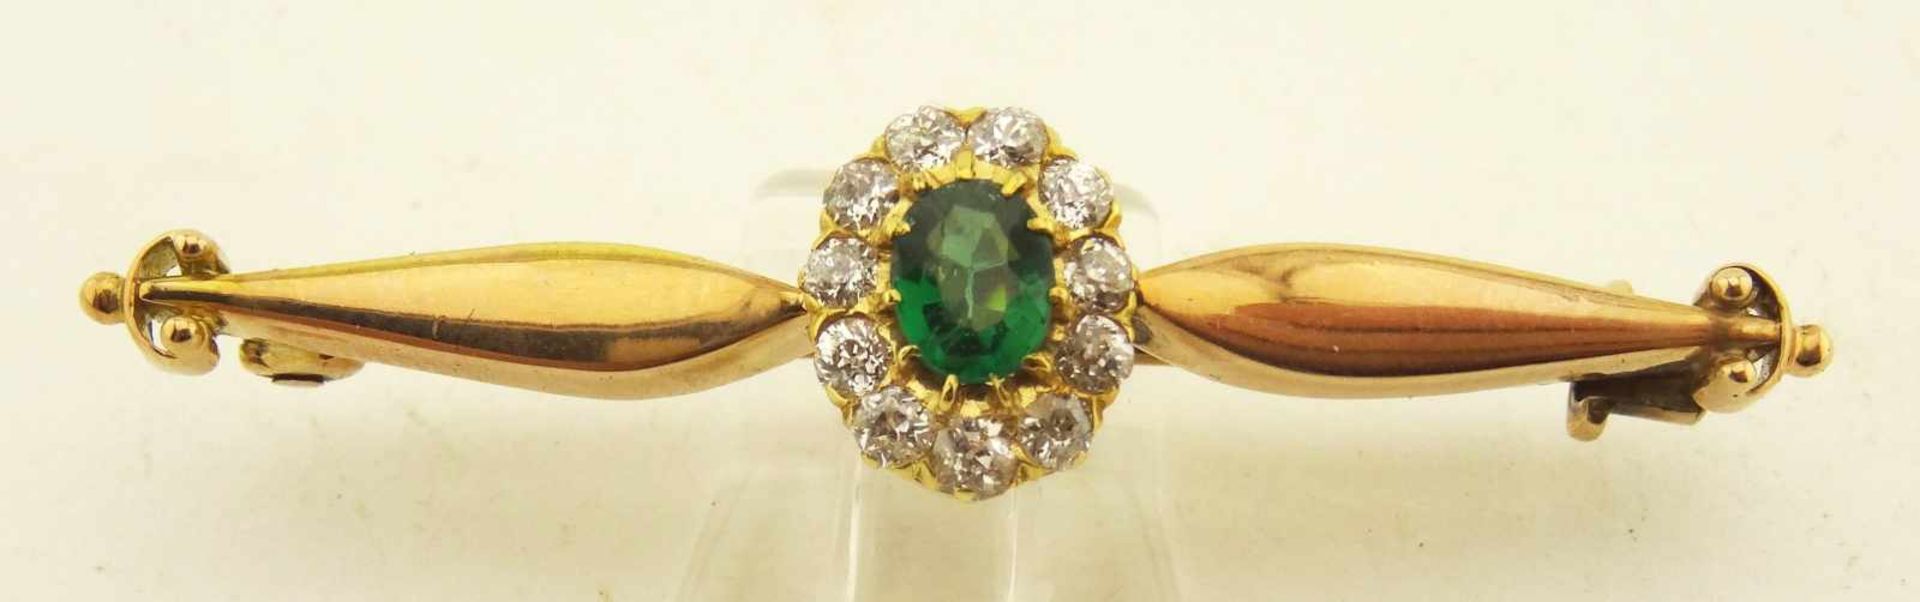 Nadel Diamant und wohl Smaragd 585 Gold ges. Länge 47mm, Diamanten zus. ca. 0,22ct., der grüne Stein